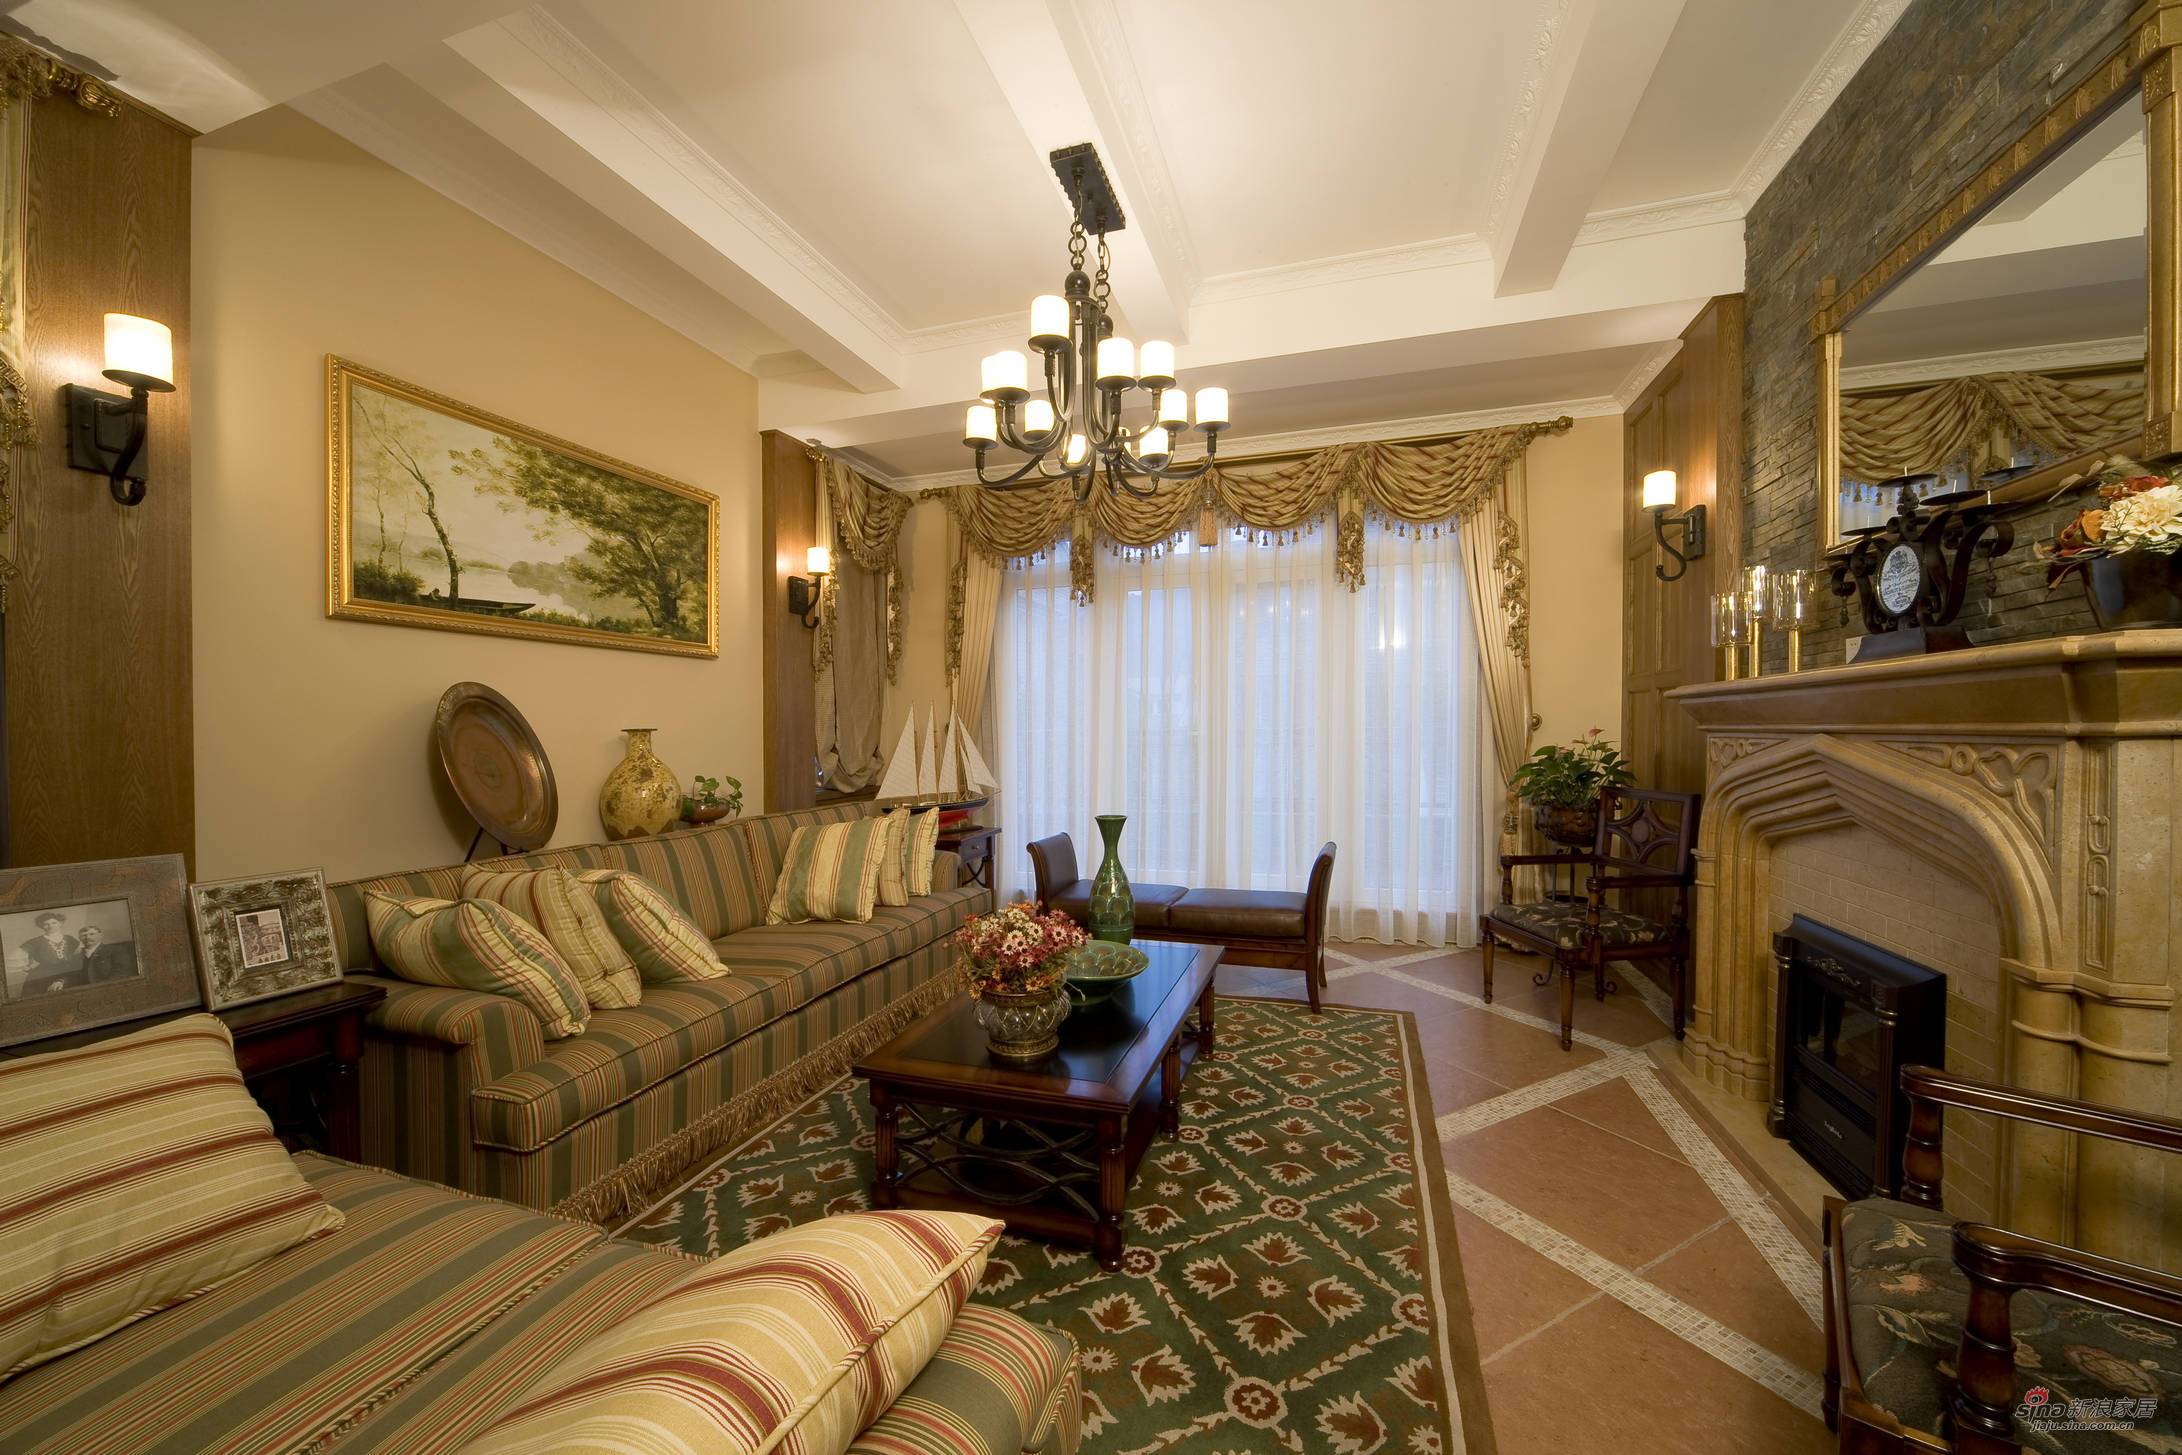 美式 别墅 客厅图片来自用户1907685403在【高清】340平别墅装修实景美式设计风格62的分享